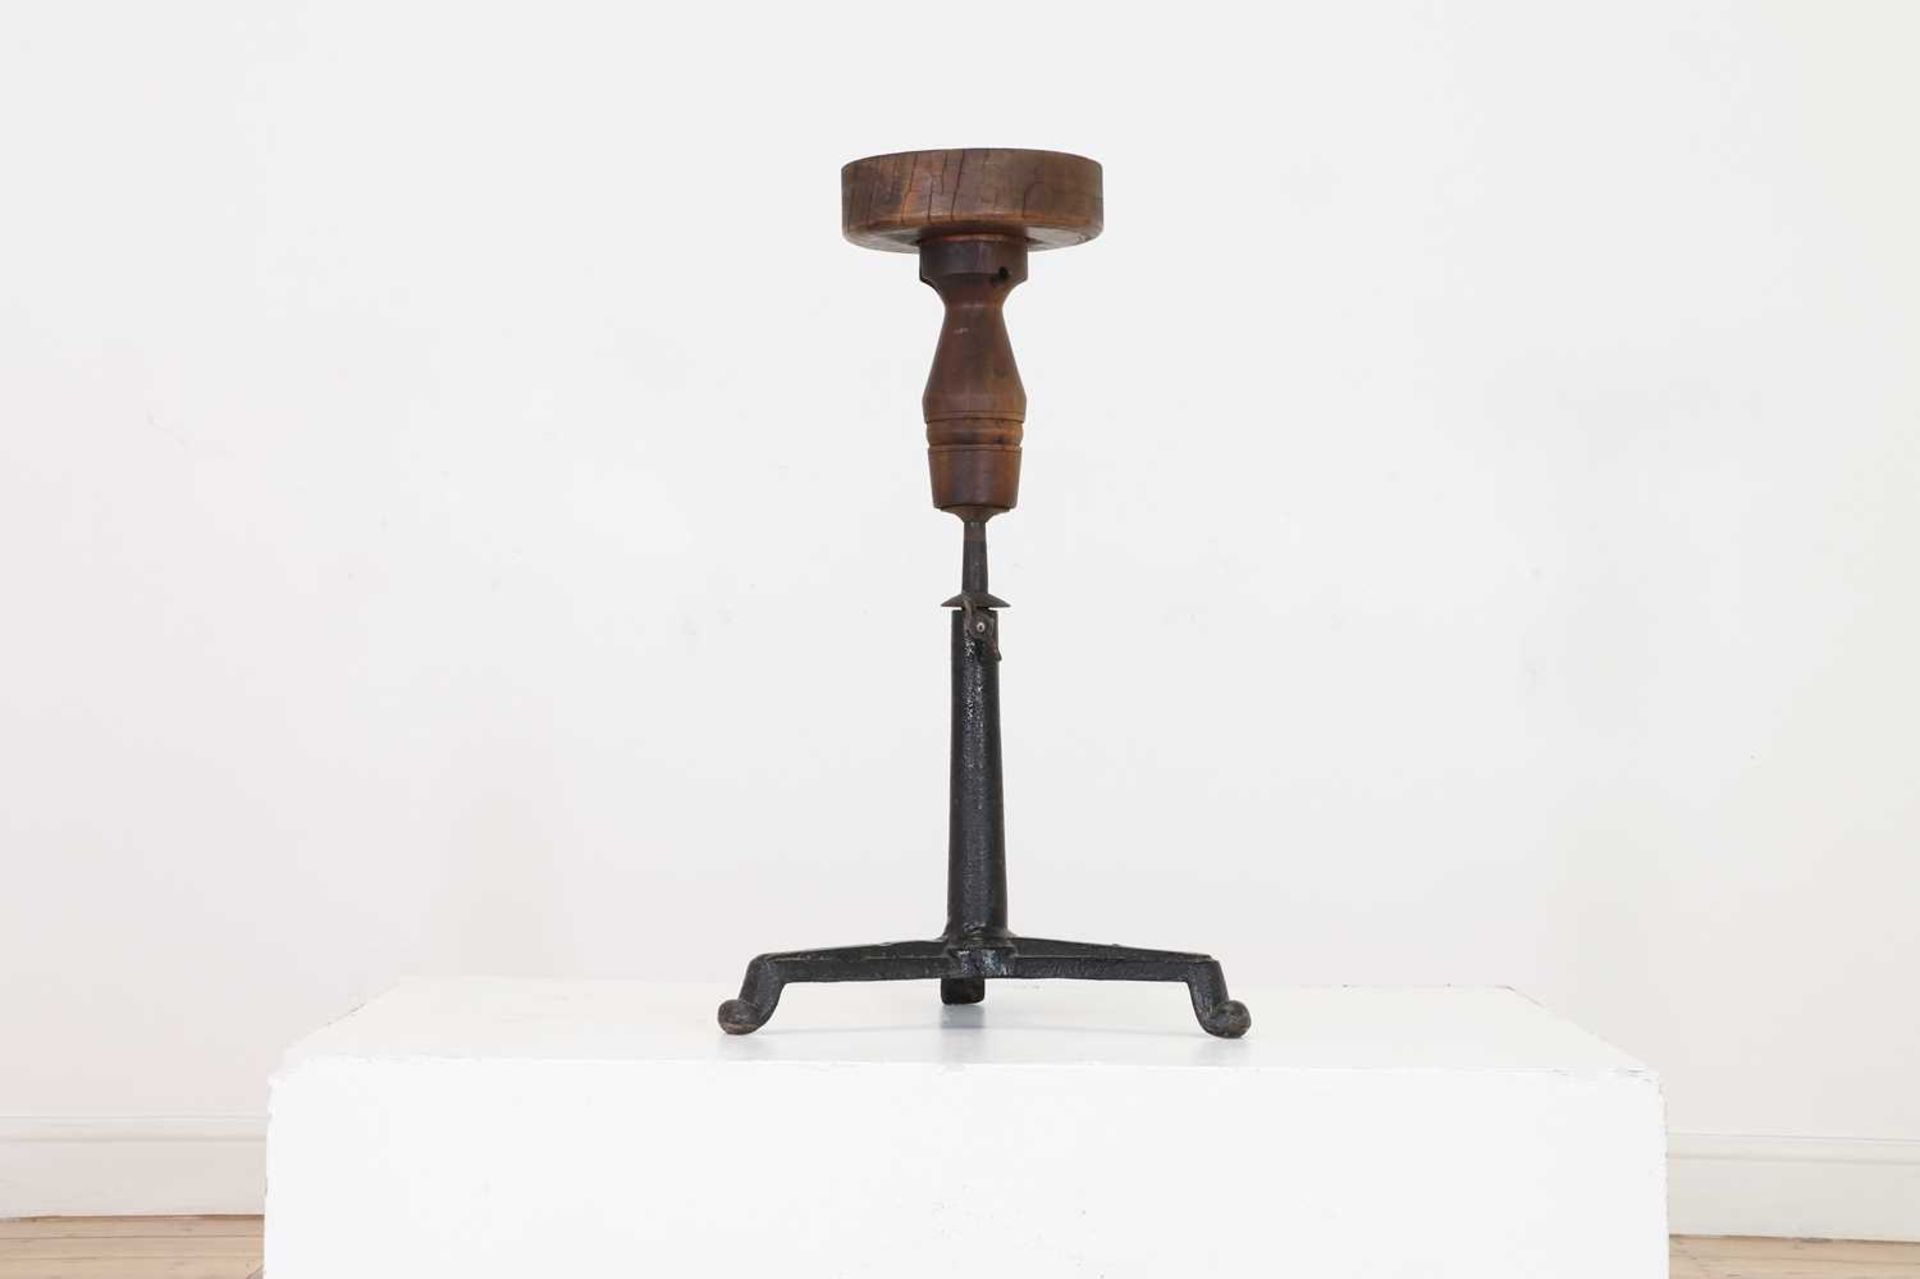 An adjustable oak sculpture stand,